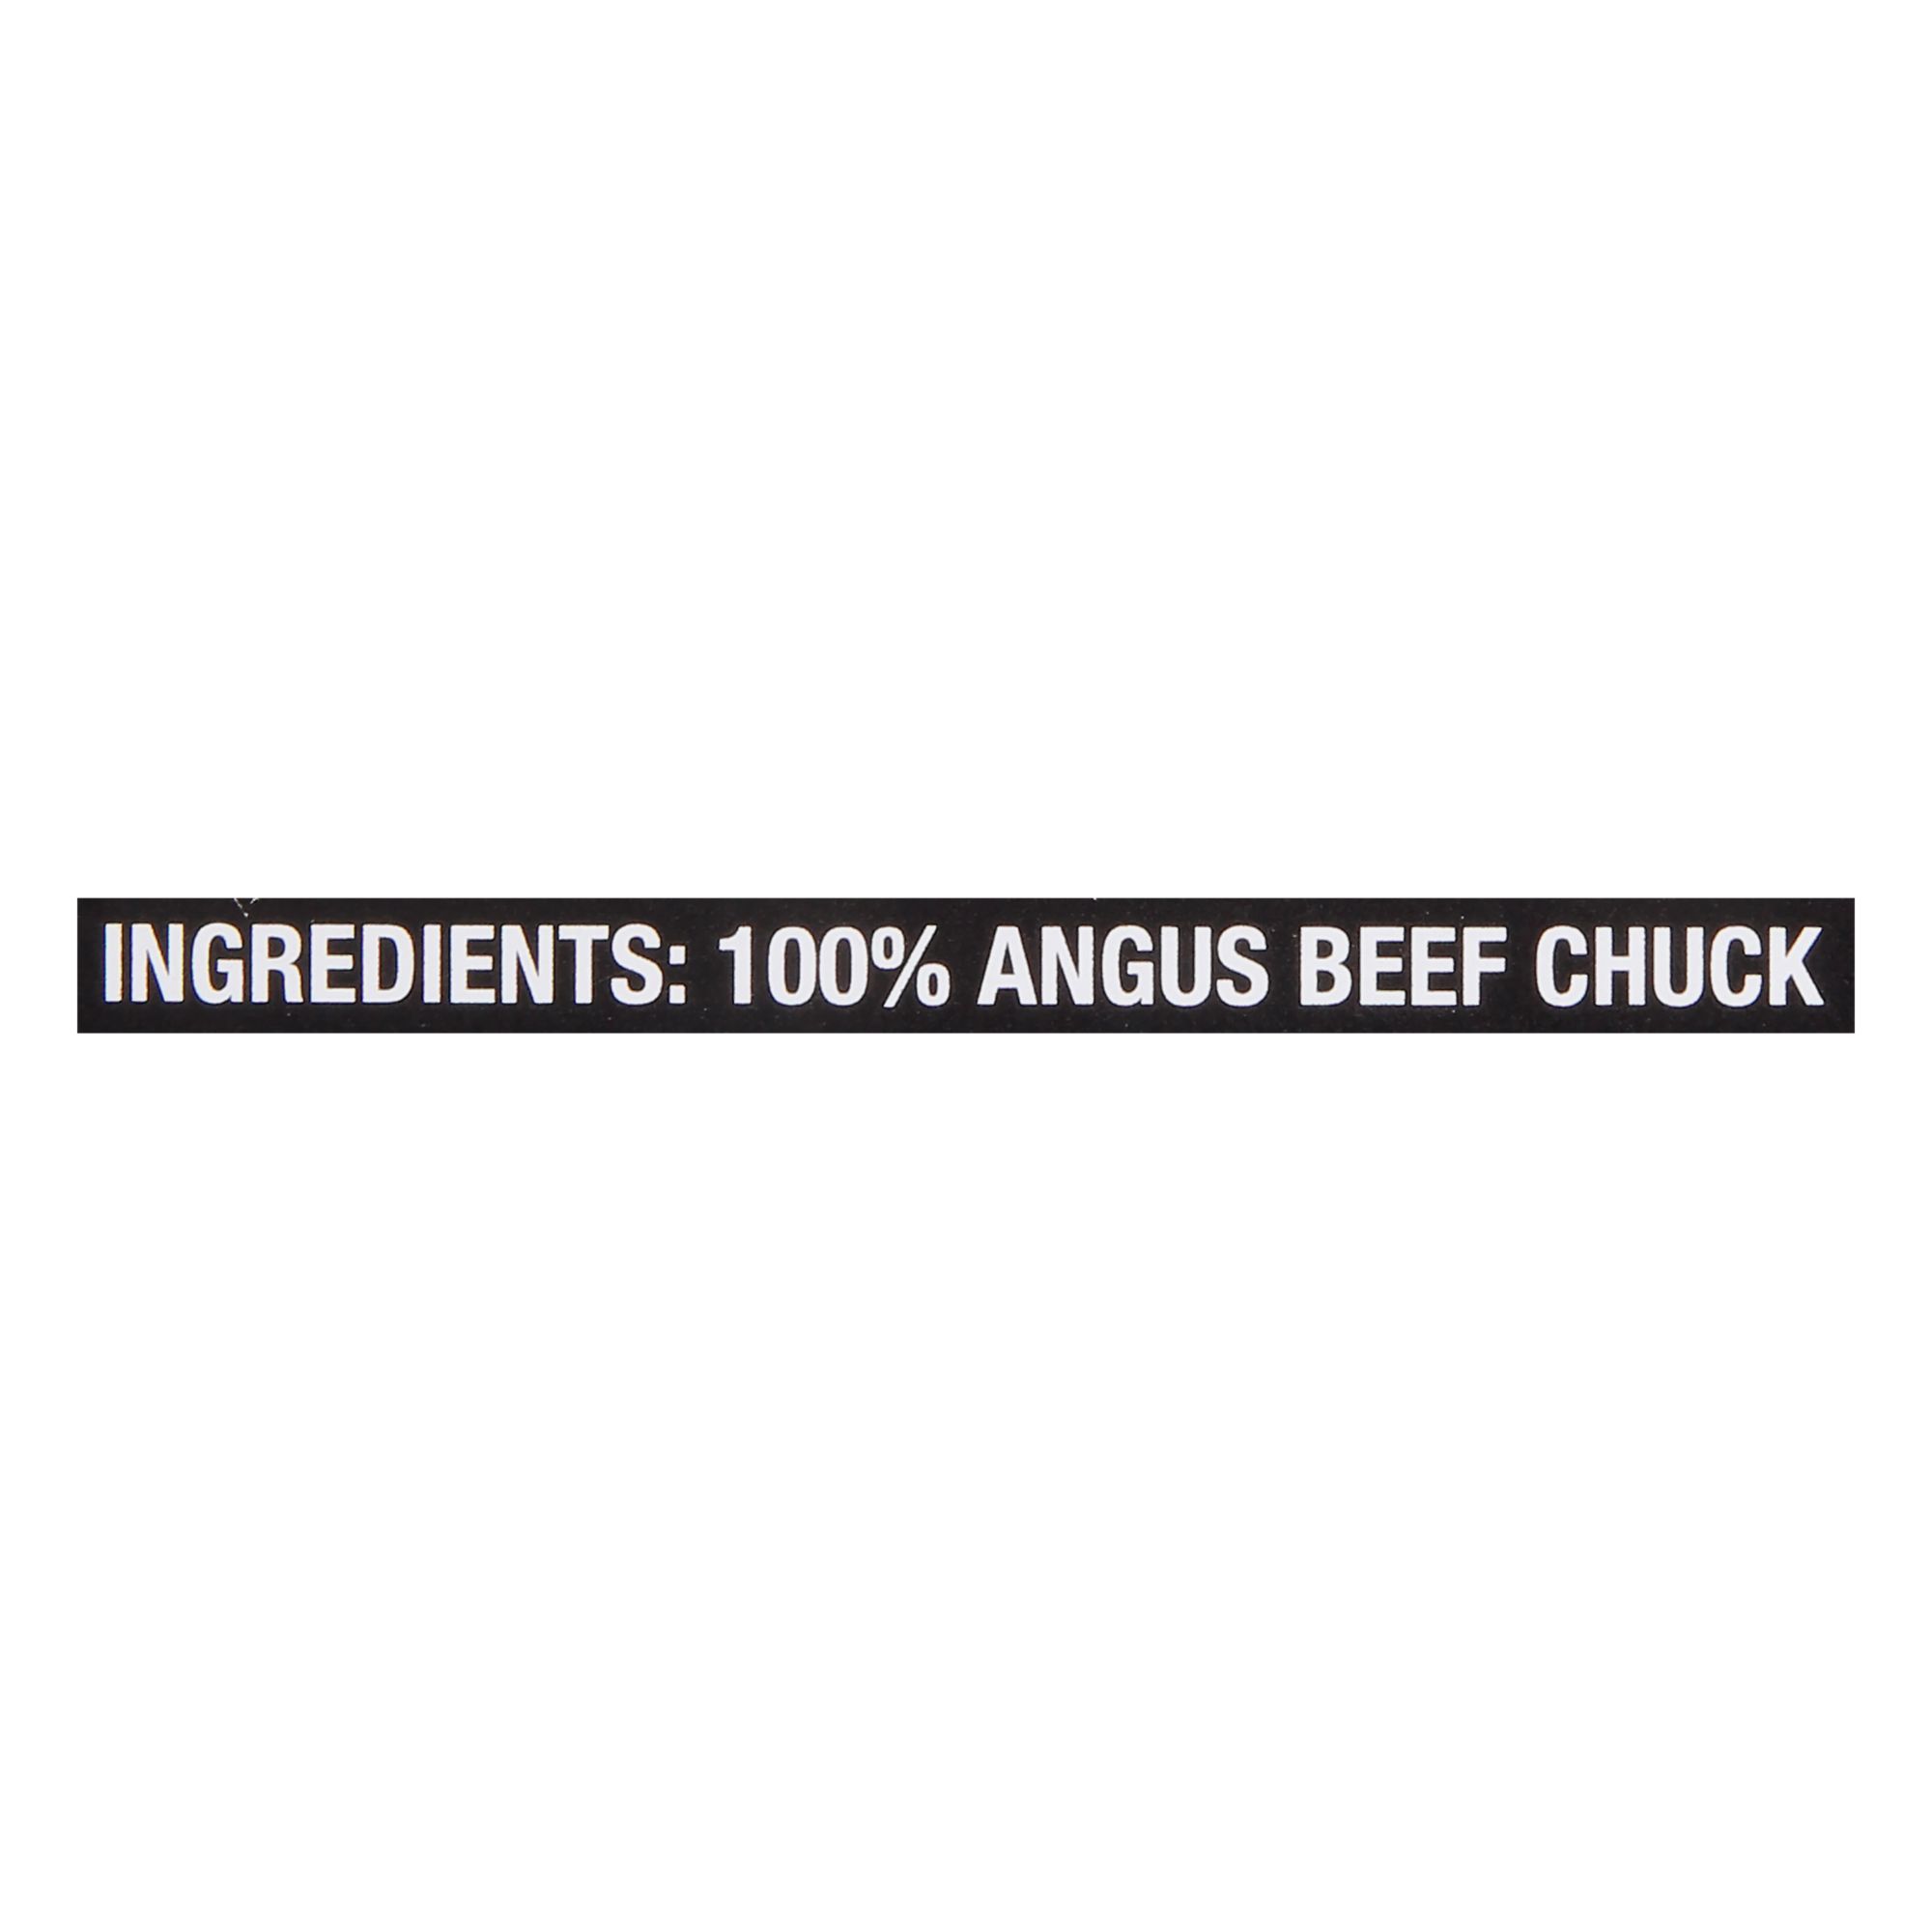 Angus Beef BUBBA Burger, 12 pk./5.3 oz.